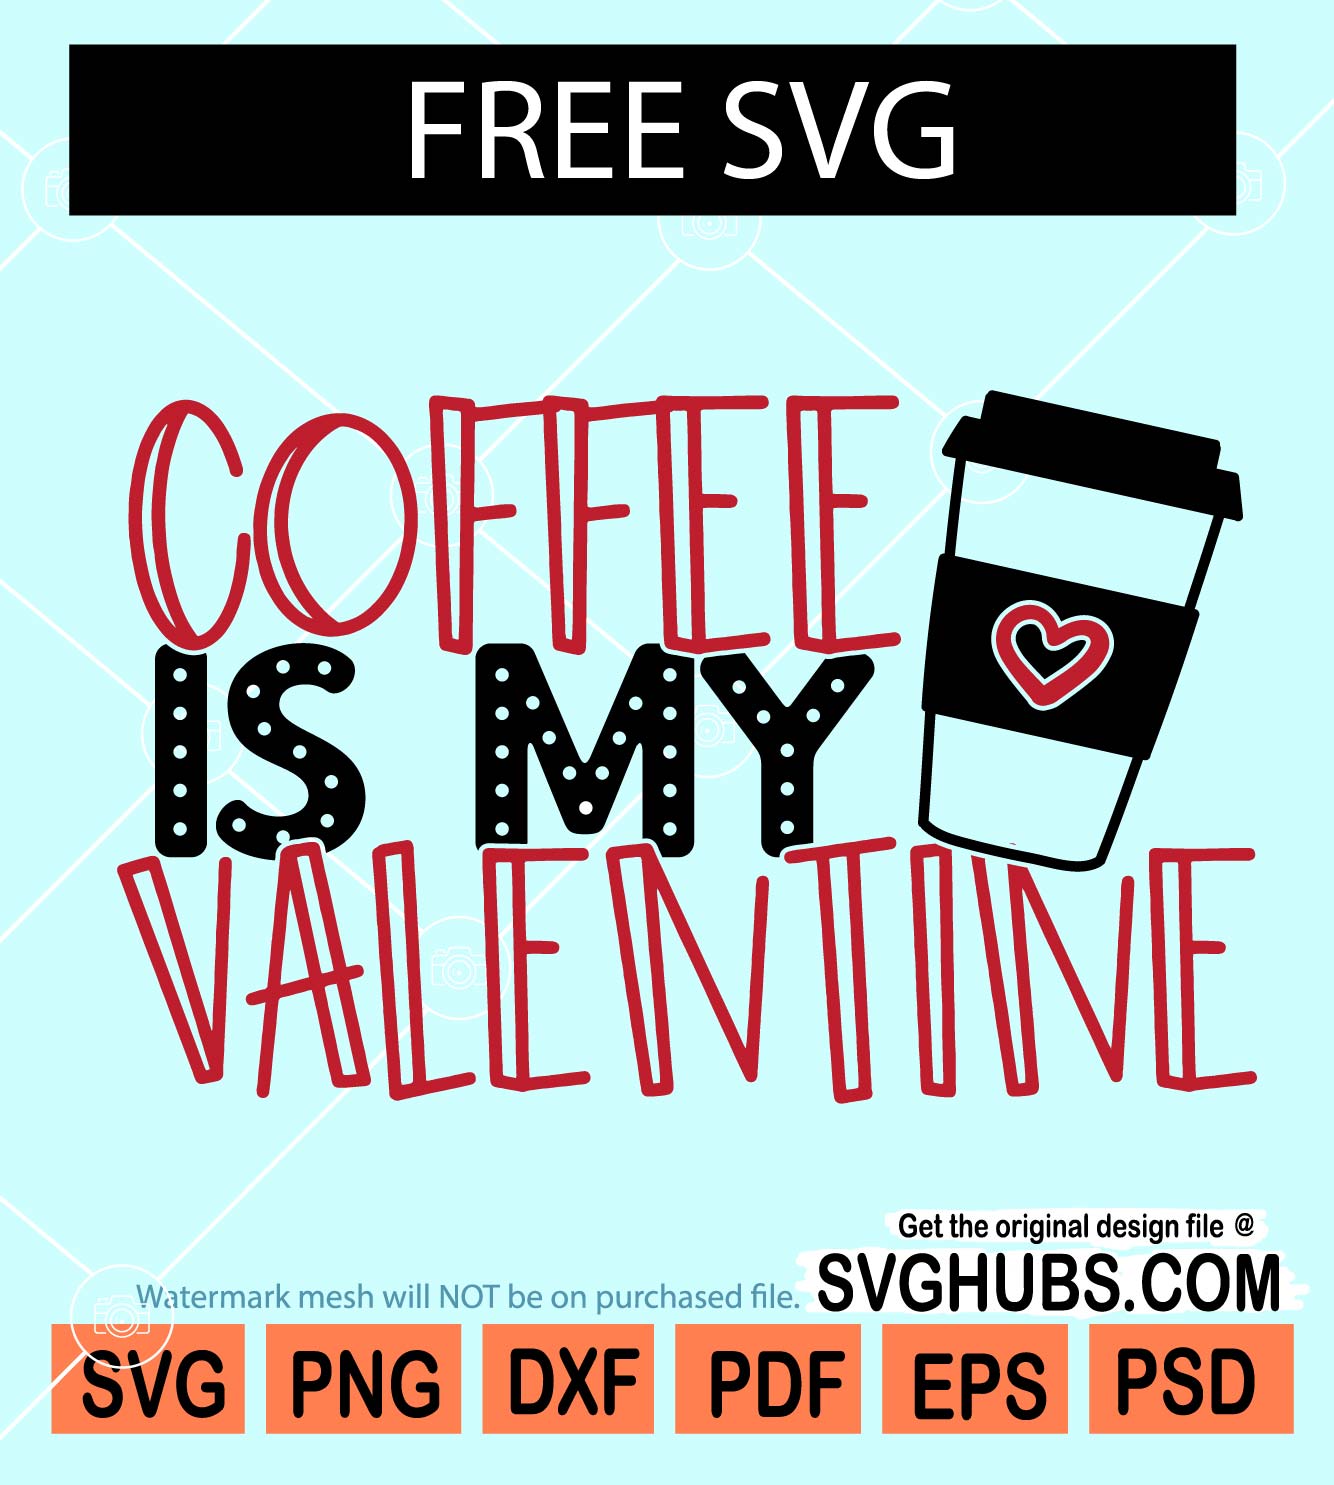 Coffee is my valentine SVG free, Valentine svg free, Free Valentine SVG, Coffee lover svg free